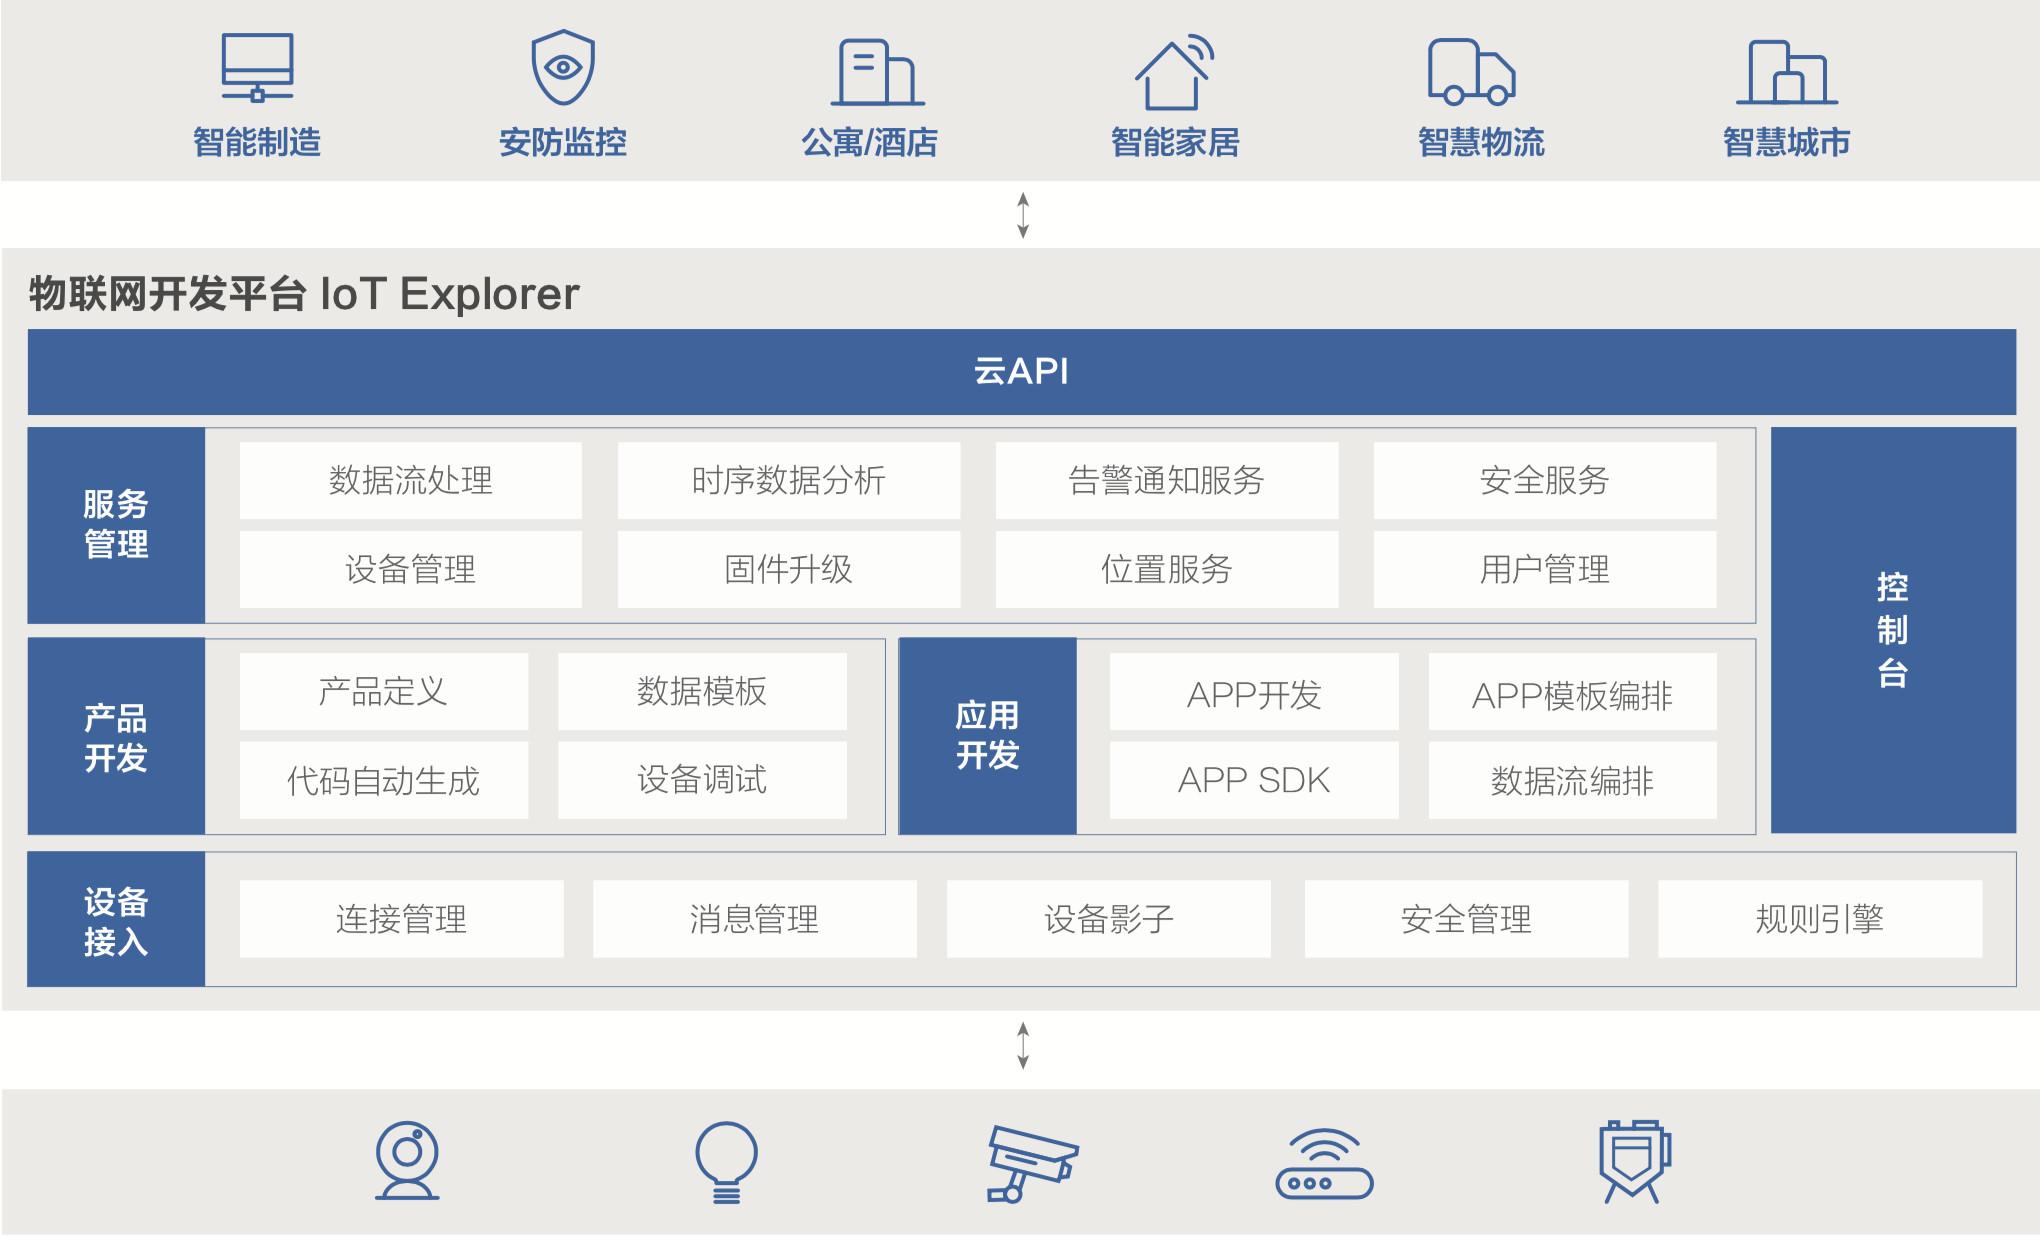 腾讯云发布物联网开发平台 iot explorer,布局物联网领域